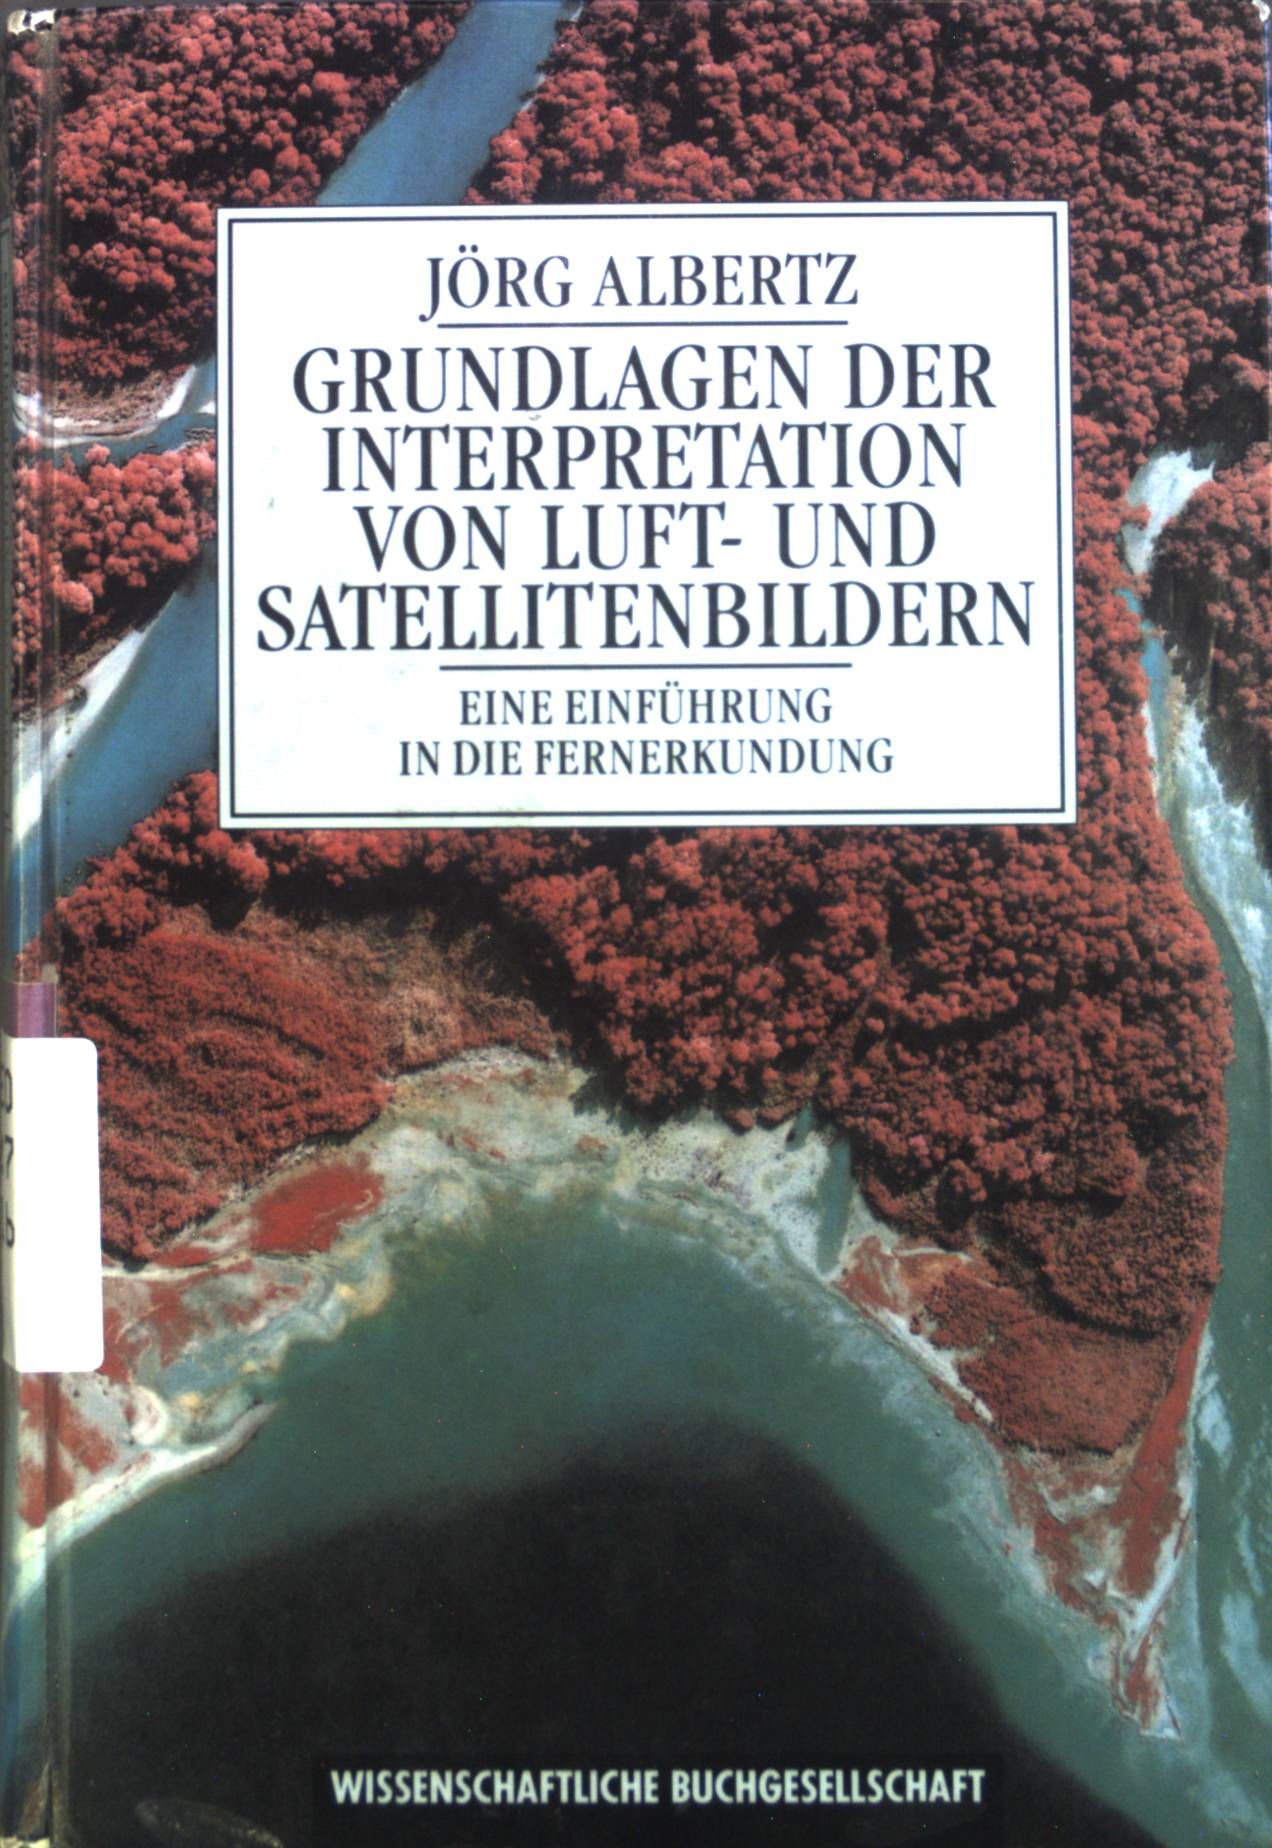 Grundlagen der Interpretation von Luft- und Satellitenbildern : Eine Einführung in die Fernerkundung. - Albertz, Jörg